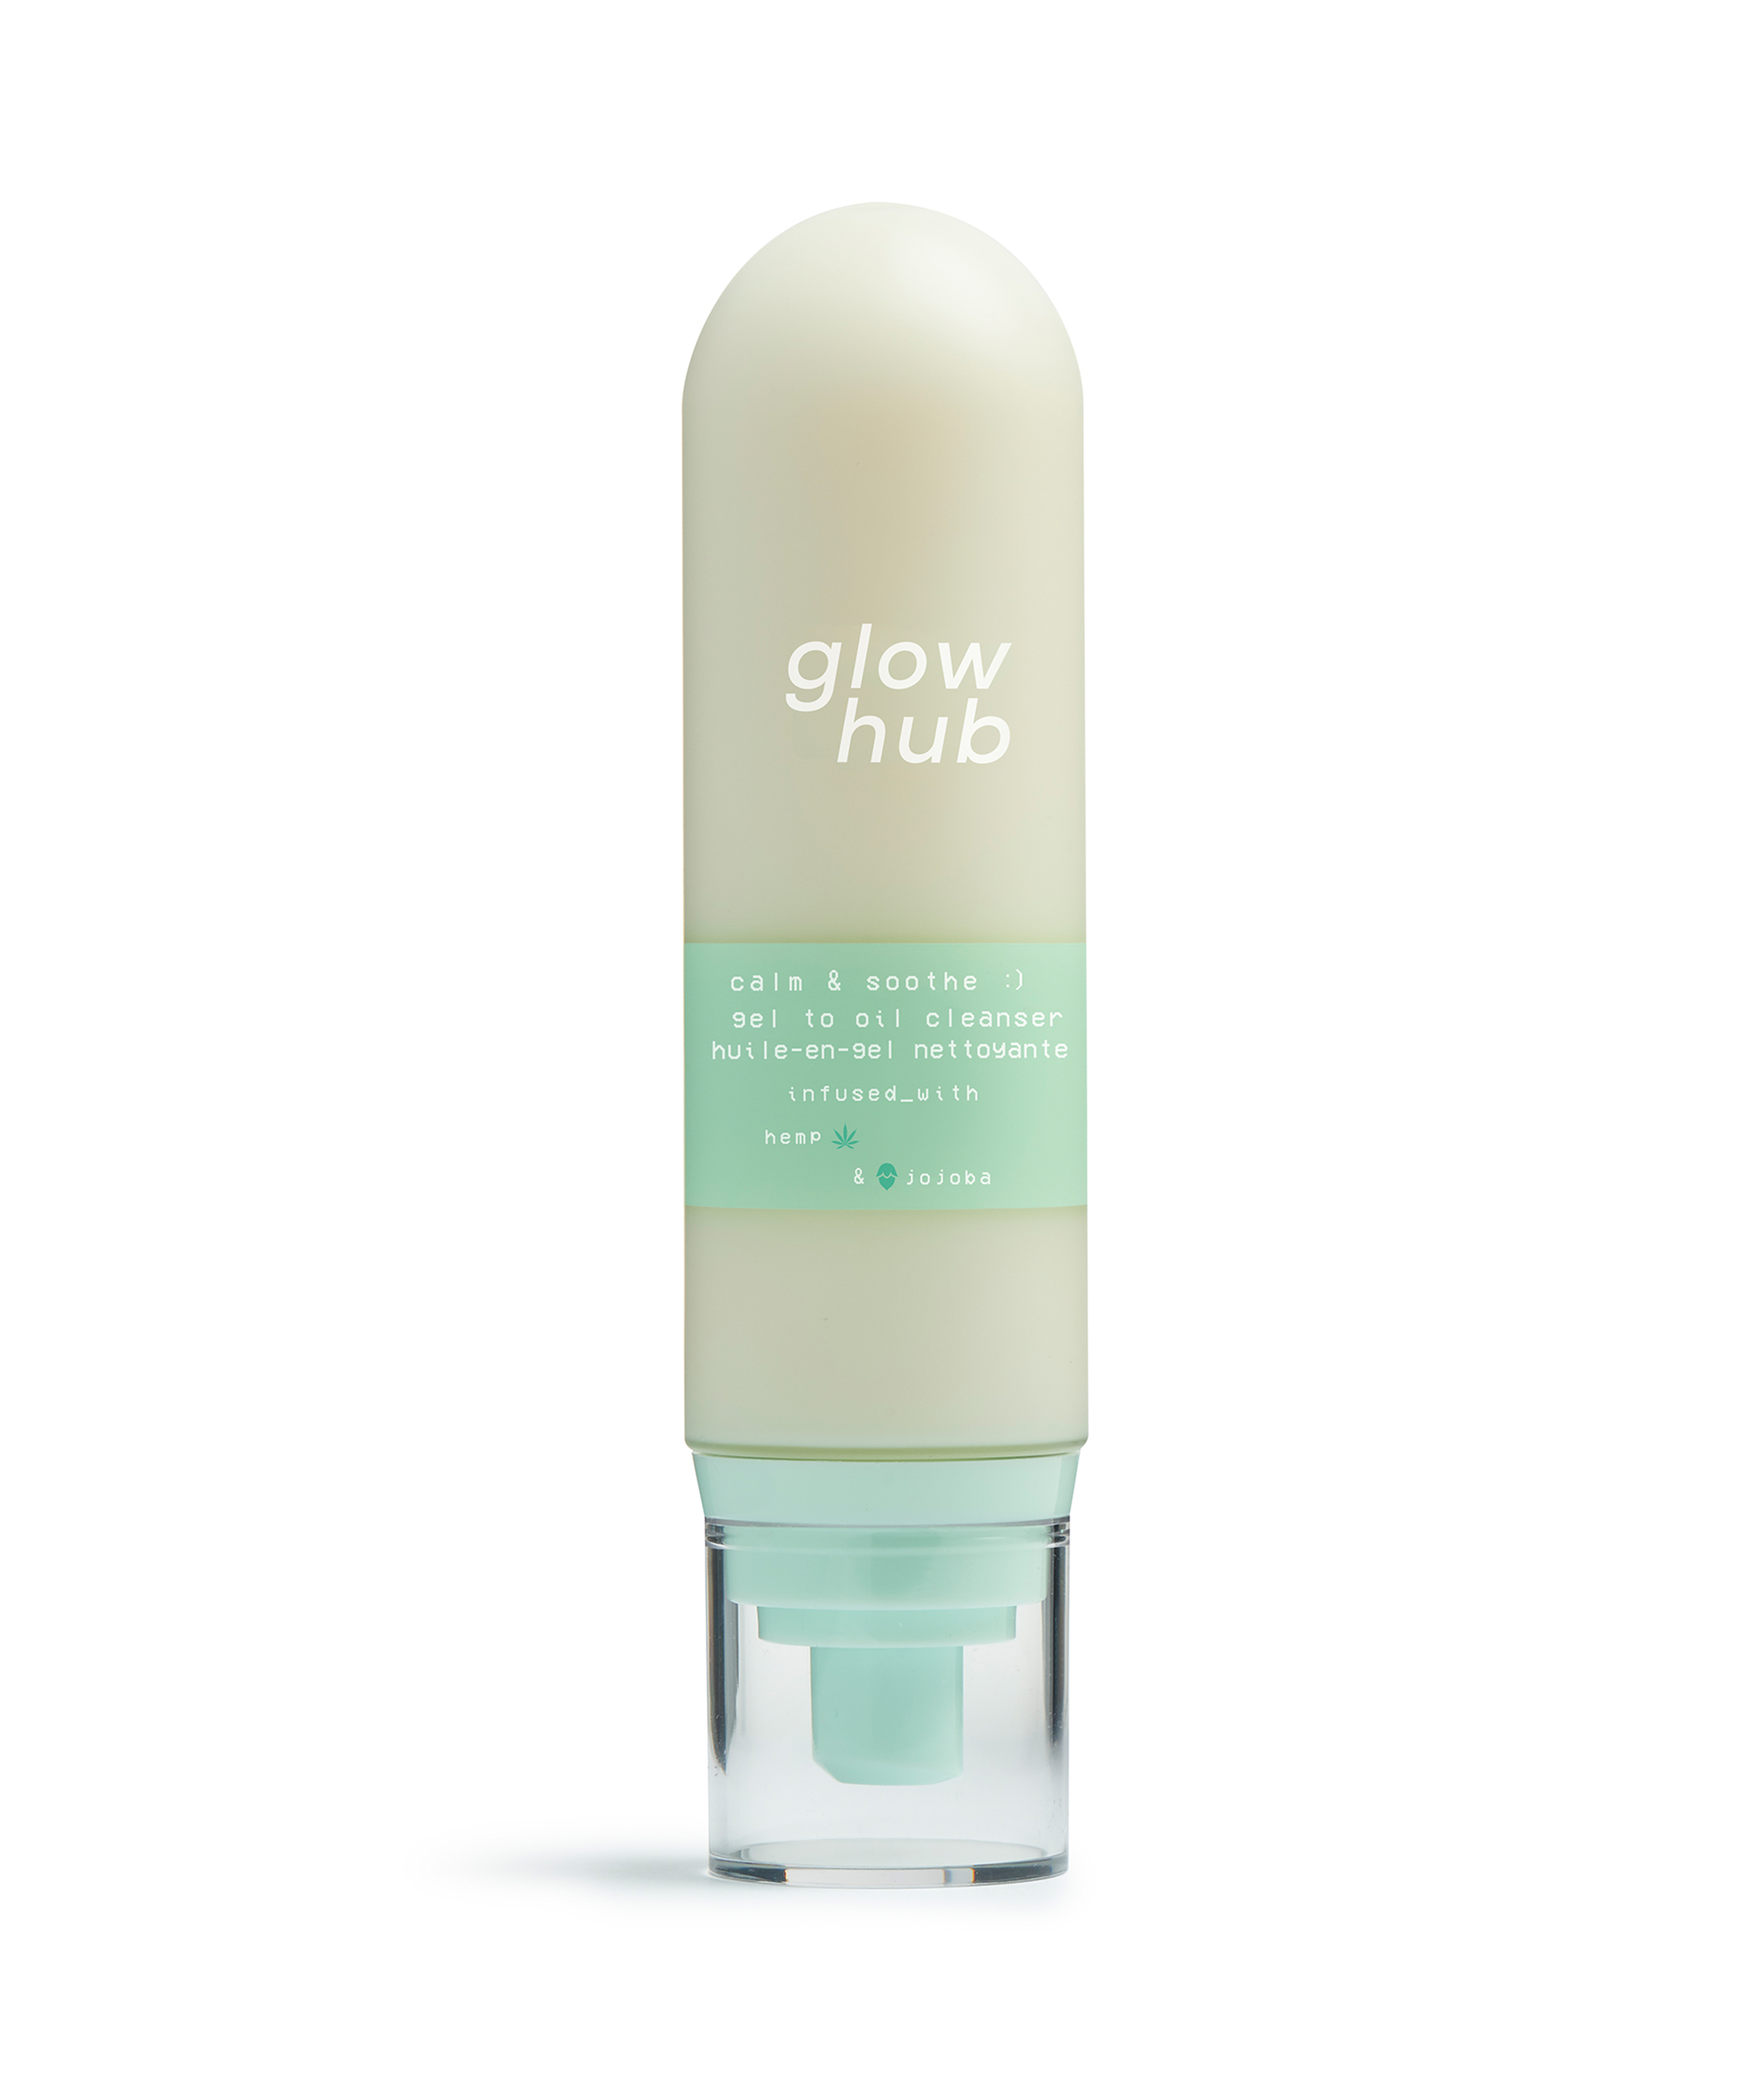 Glow Hub Calm & Soothe Gel To Oil Cleanser, Успокаивающее очищающее средство для кожи